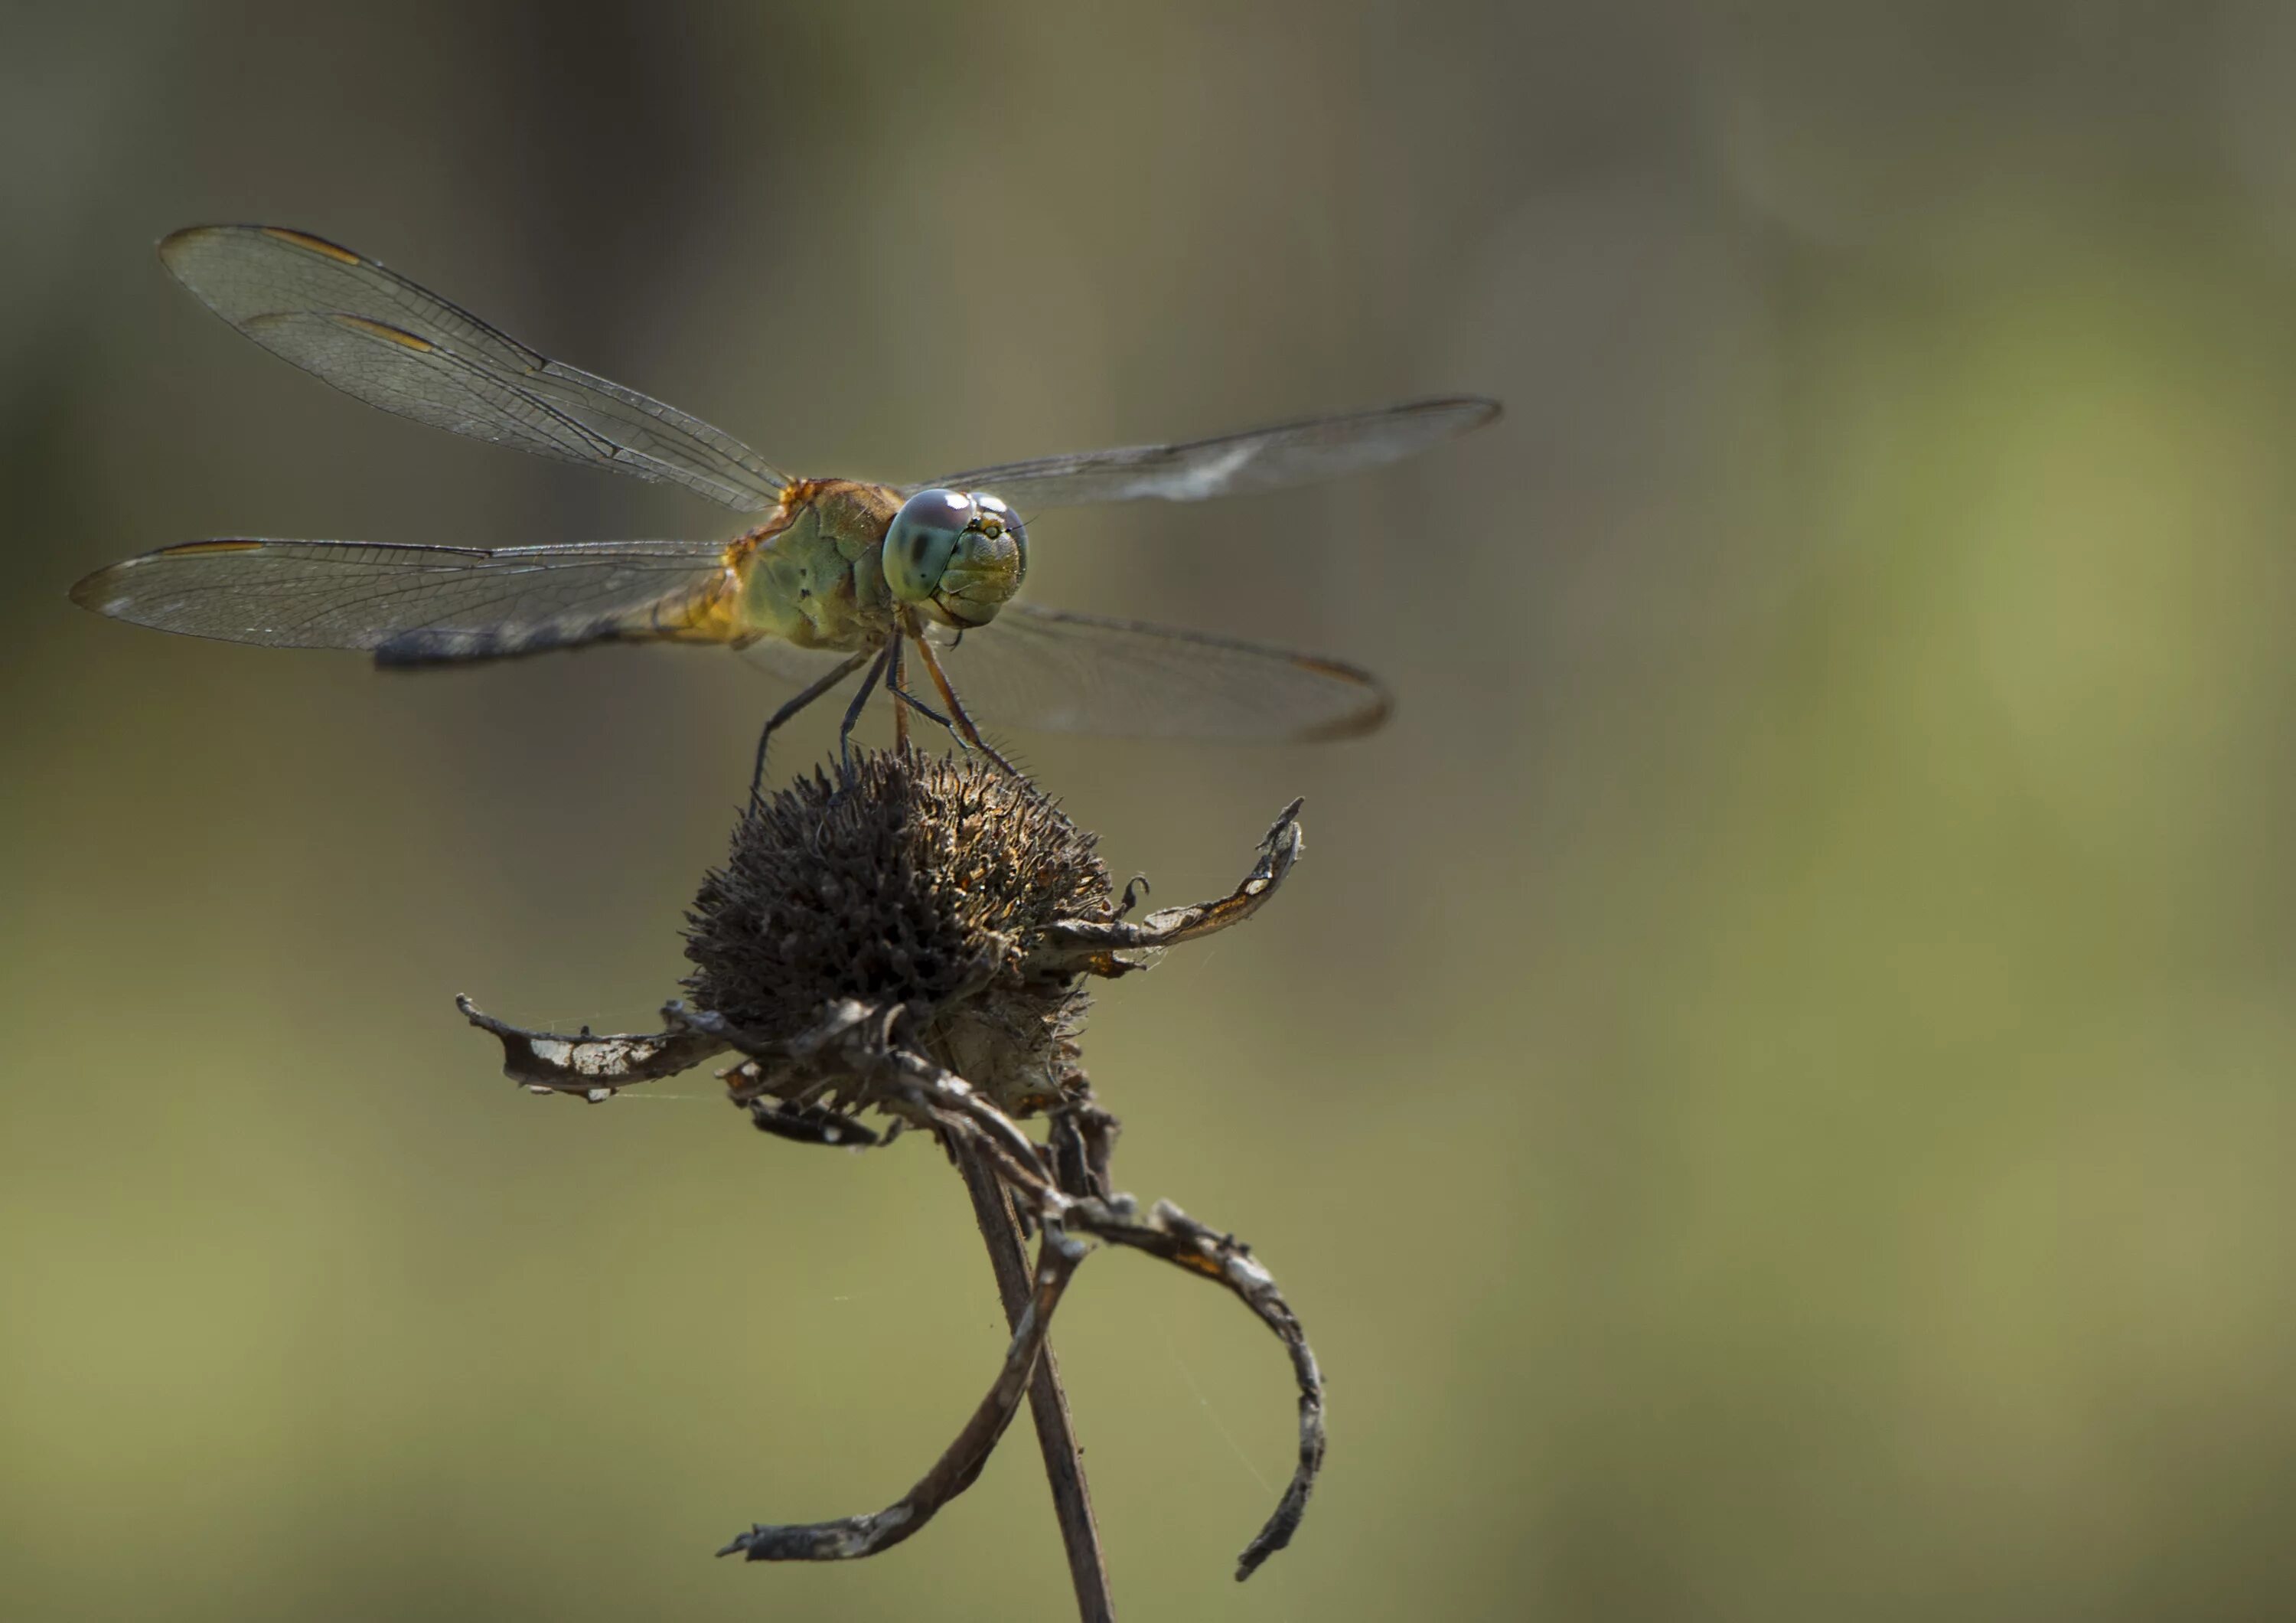 Летающие насекомые. Летающие насекомые комар. Летающие насекомые Крыма. Стрекоза двукрылая. Комар членистоногие двукрылые